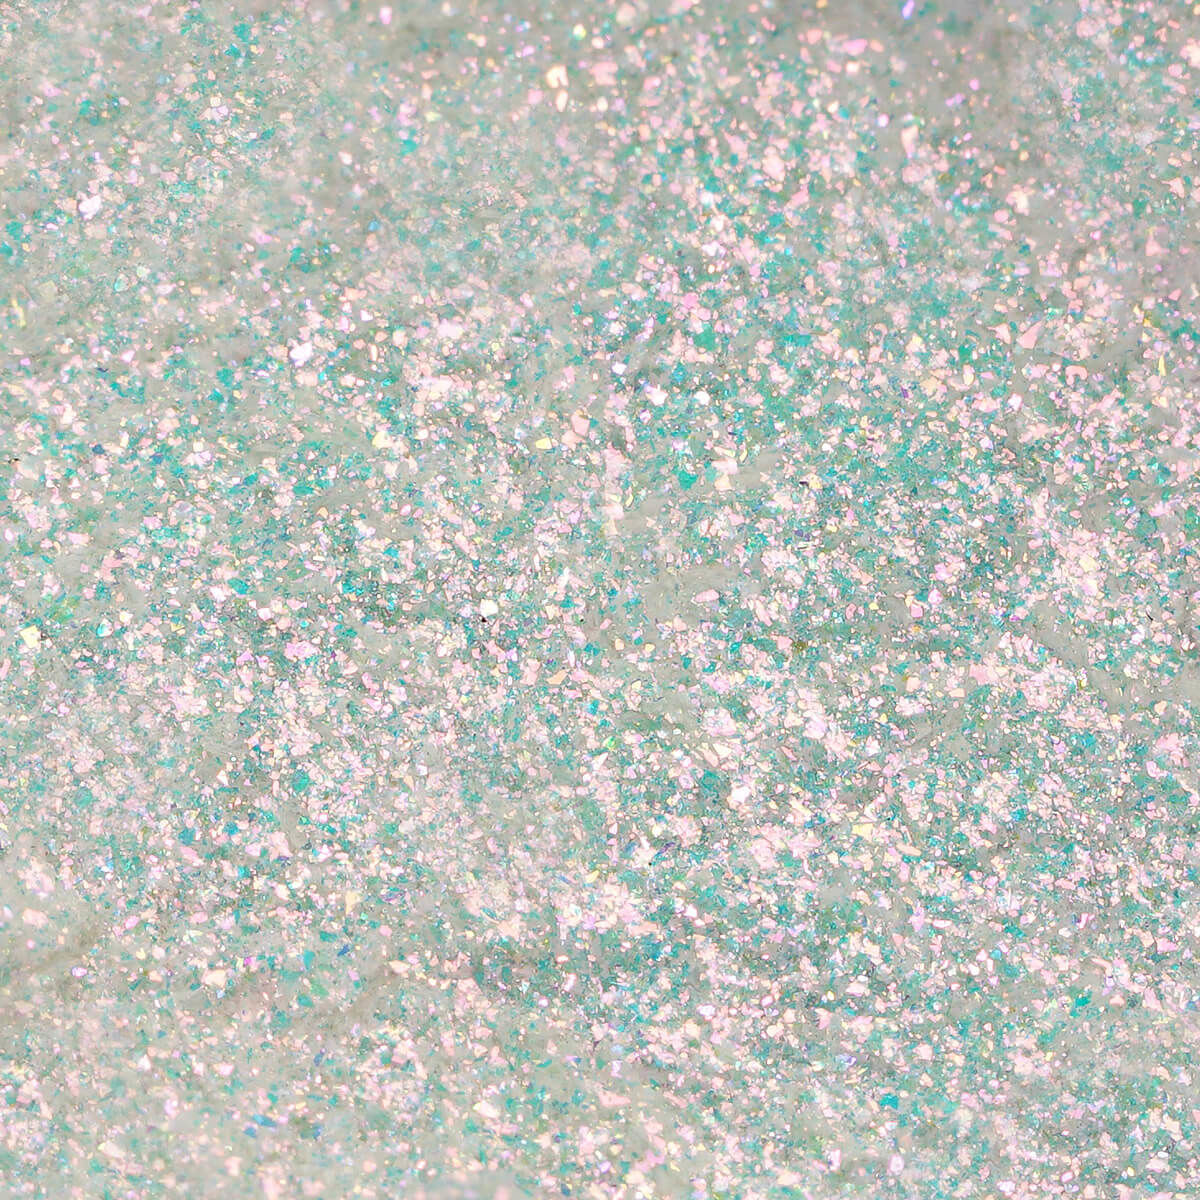 Neglepynt - SemiFlash - Aurora Pink 682 - 0,5 gram-Nail Art-Semilac-NR Kosmetik